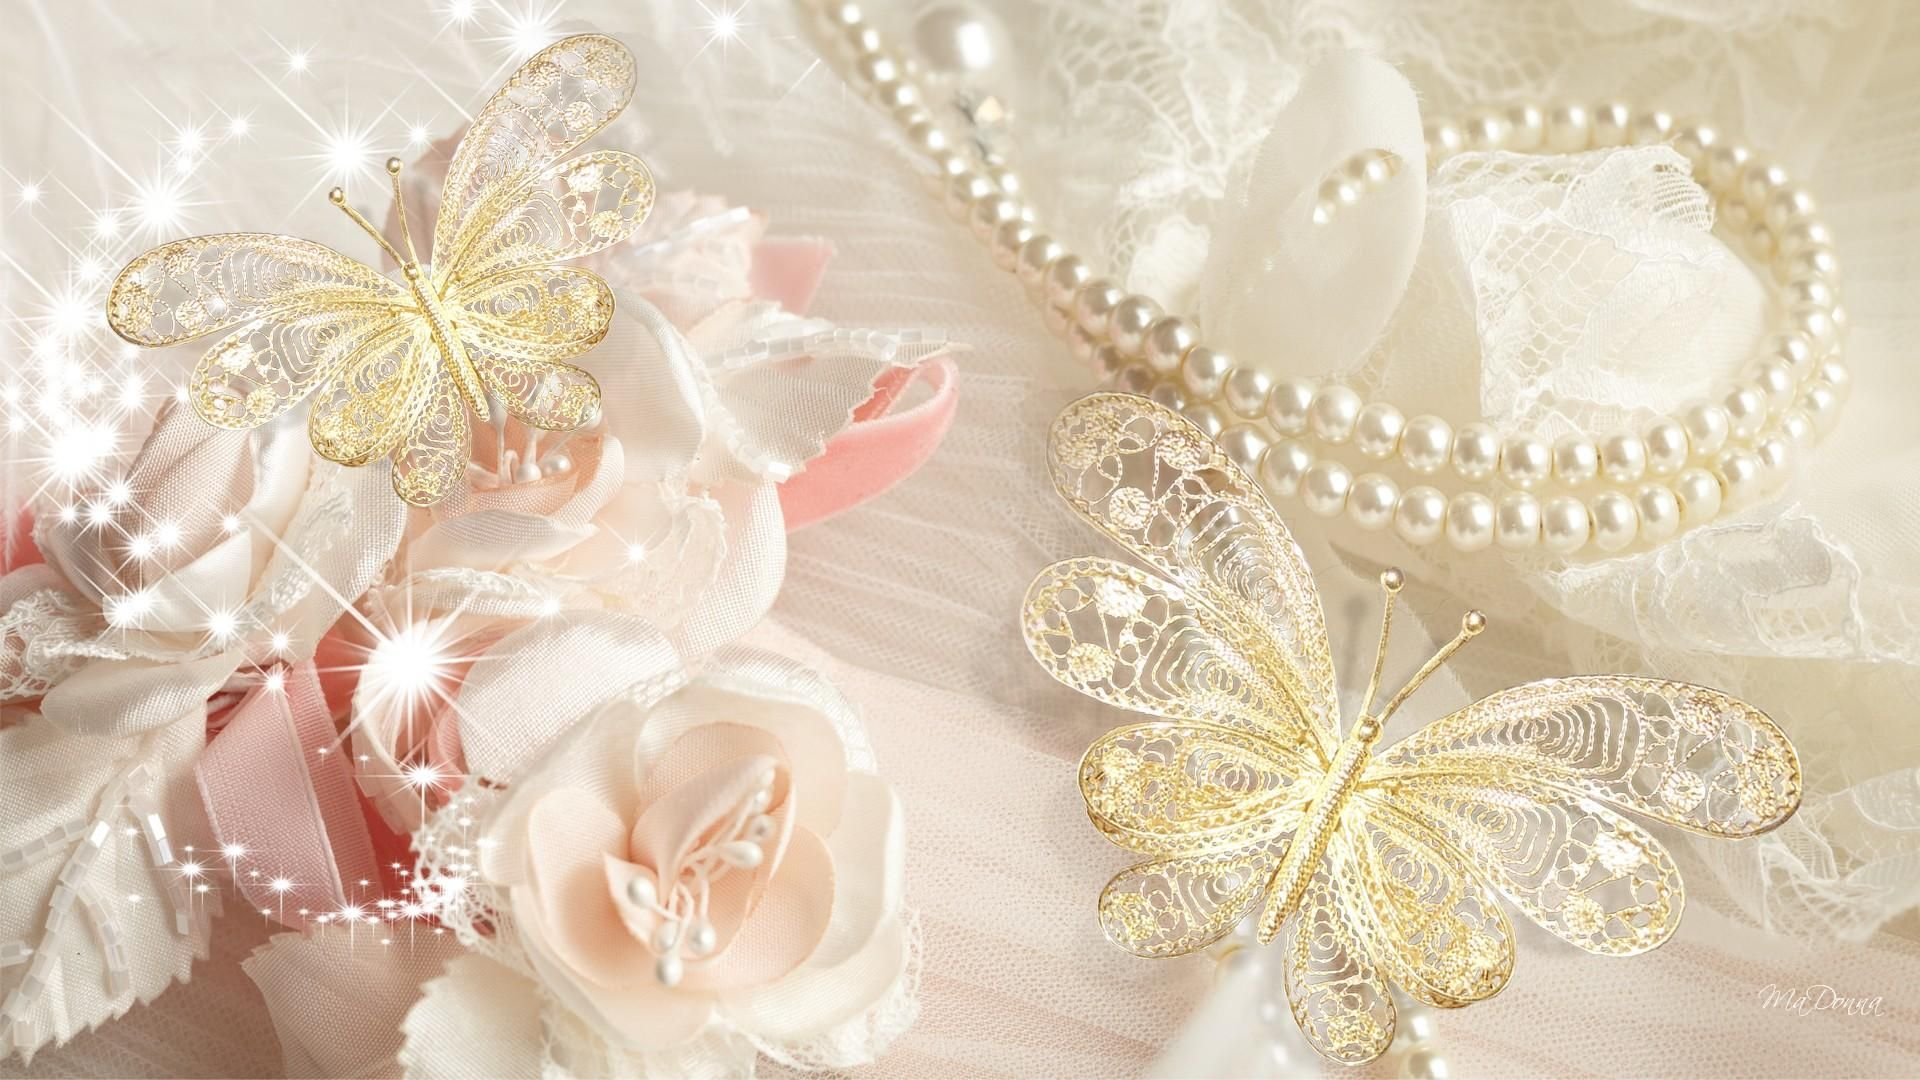 1920x1080 Resultado de imagen para imagenes de encaje , rosas vintage | Wallpaper wedding, Pearls, Pearl and lace